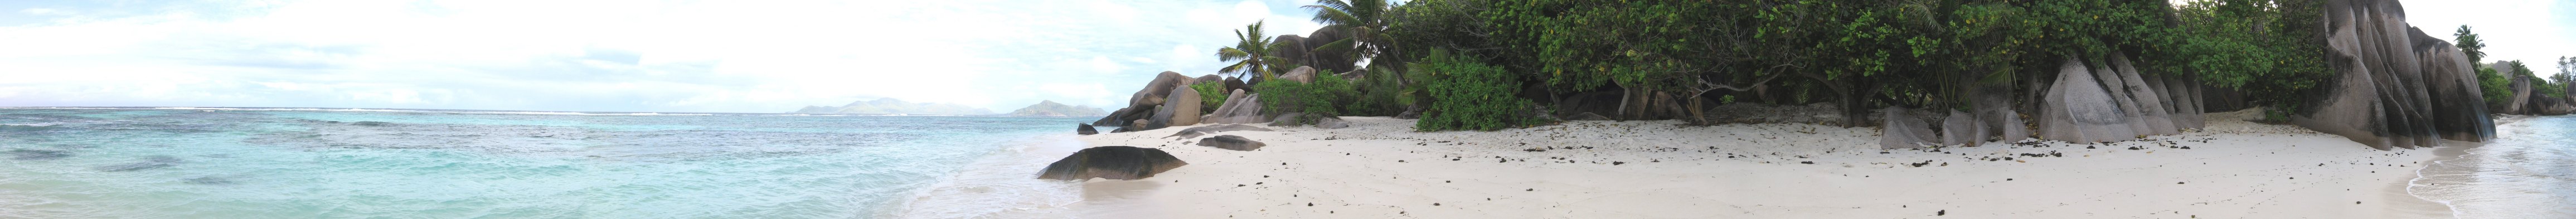 Plage d'Anse Source d'Argent - La Digue, Seychelles